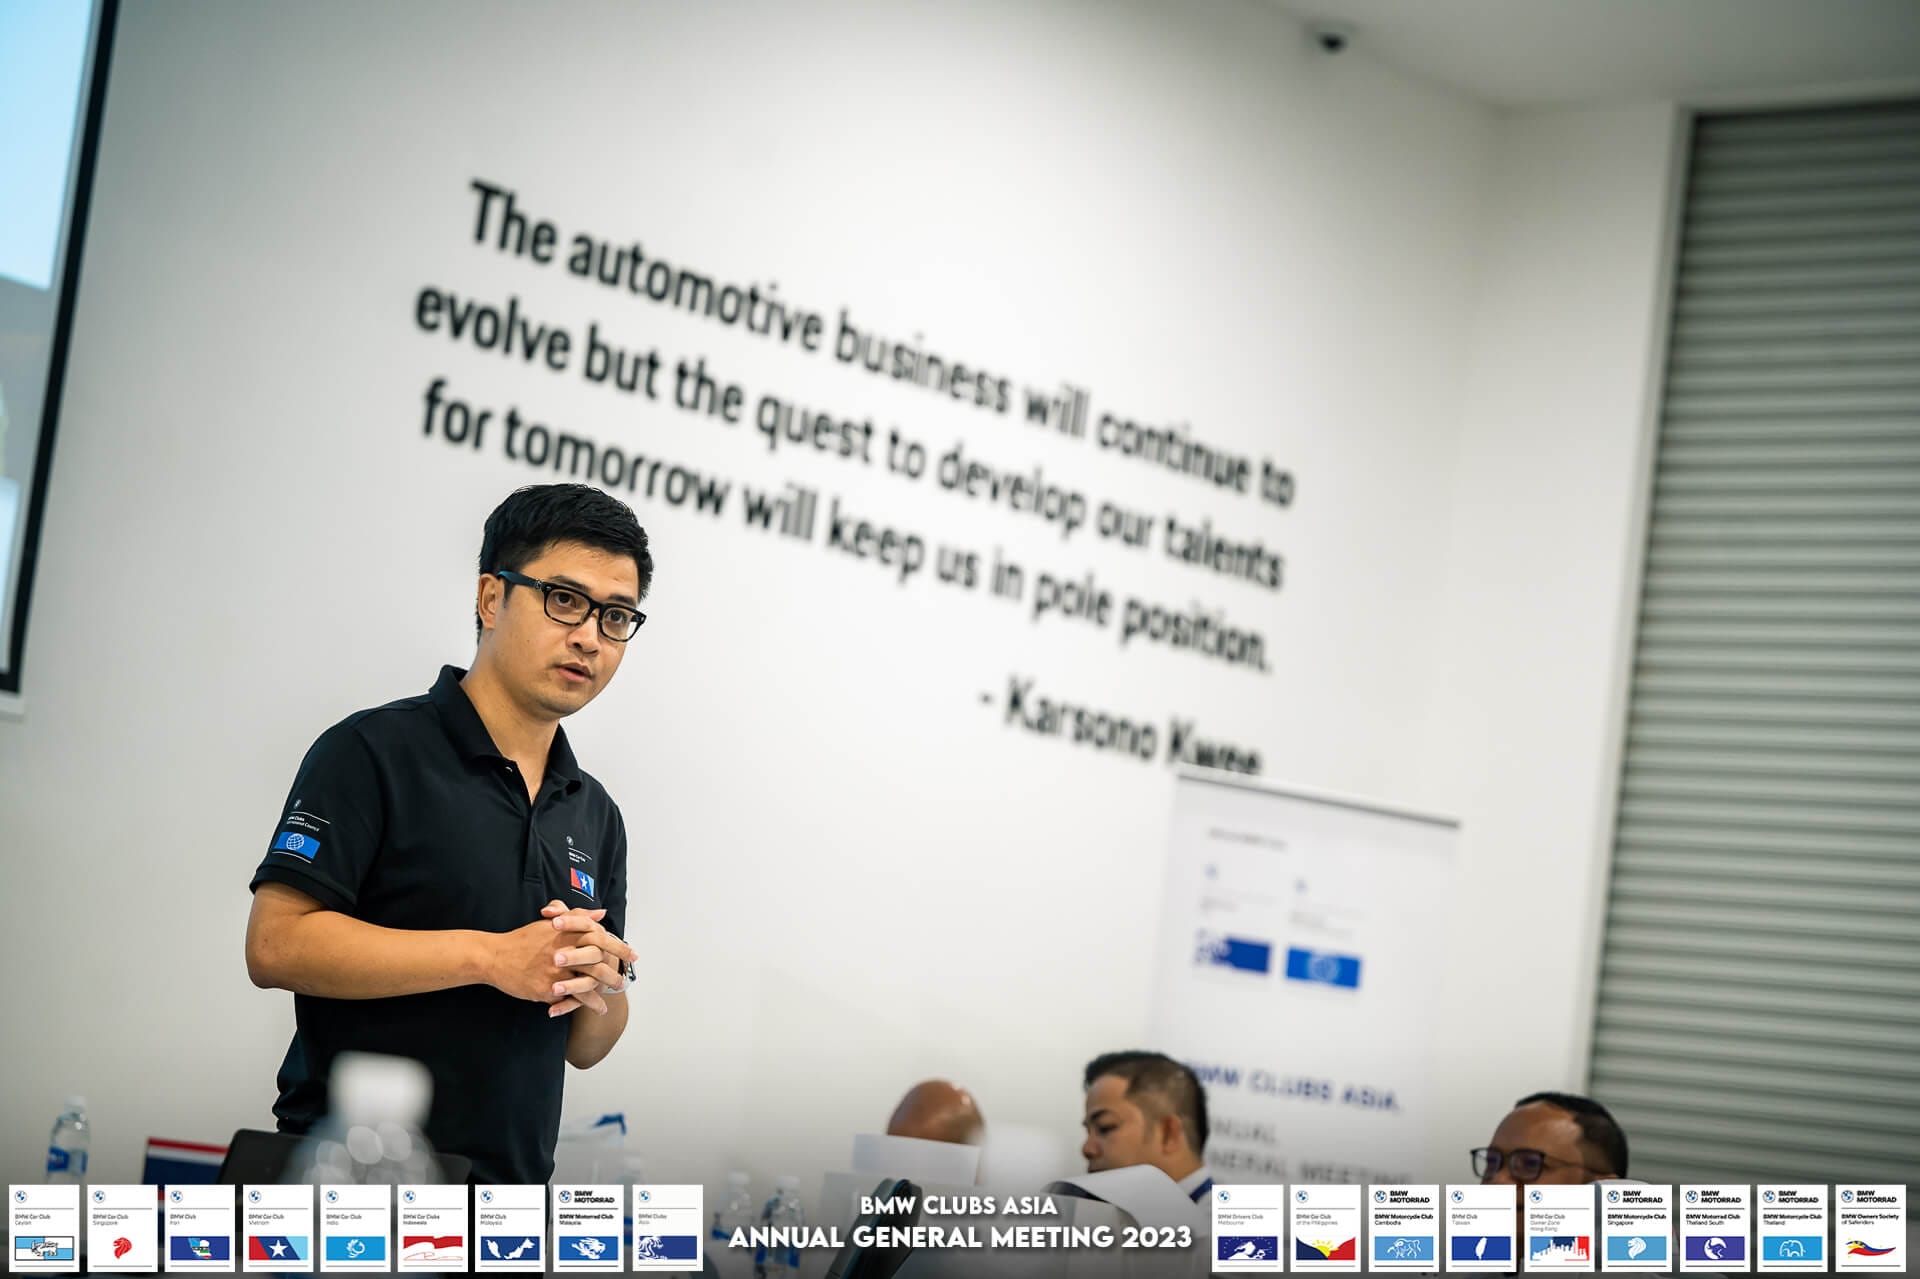 [Gallery] BMW Car Club Vietnam tham gia họp BMW Clubs Asia AGM 2023 tại Singapore